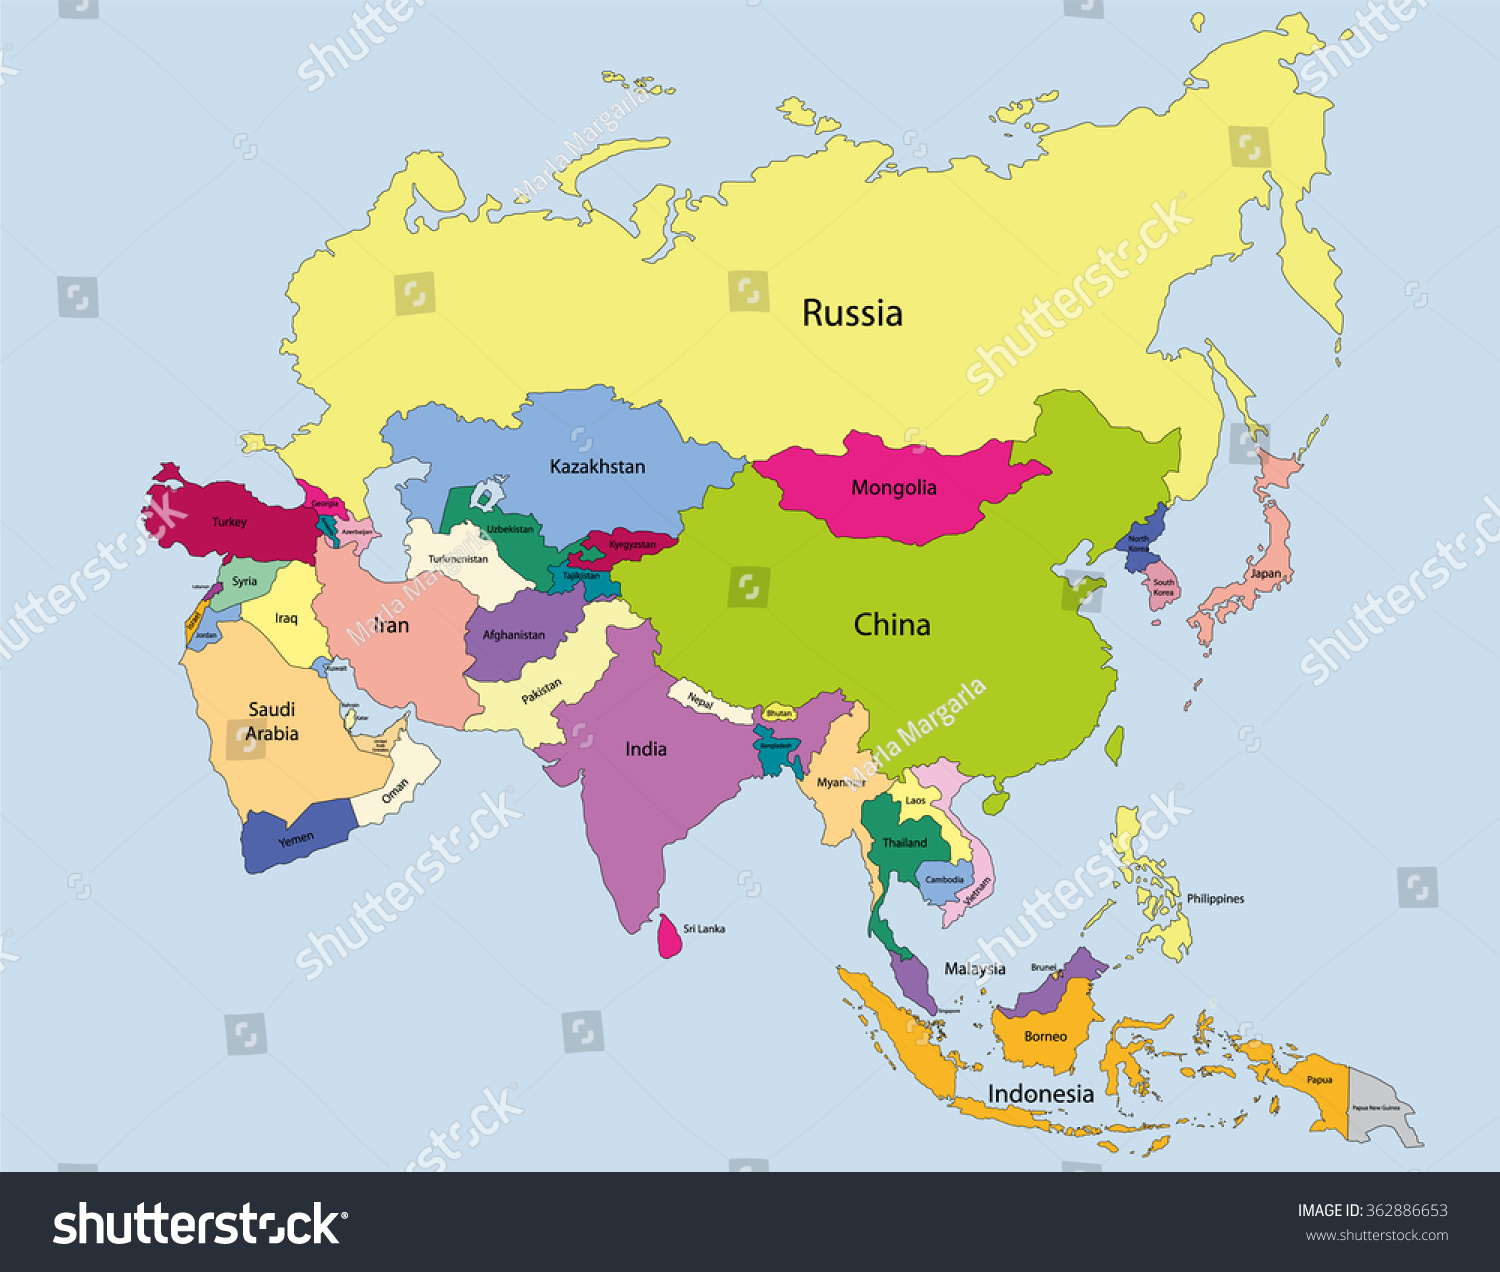 Политическая карта стран азии. Политическая карта Азии. Карта Азии на русском языке со странами.